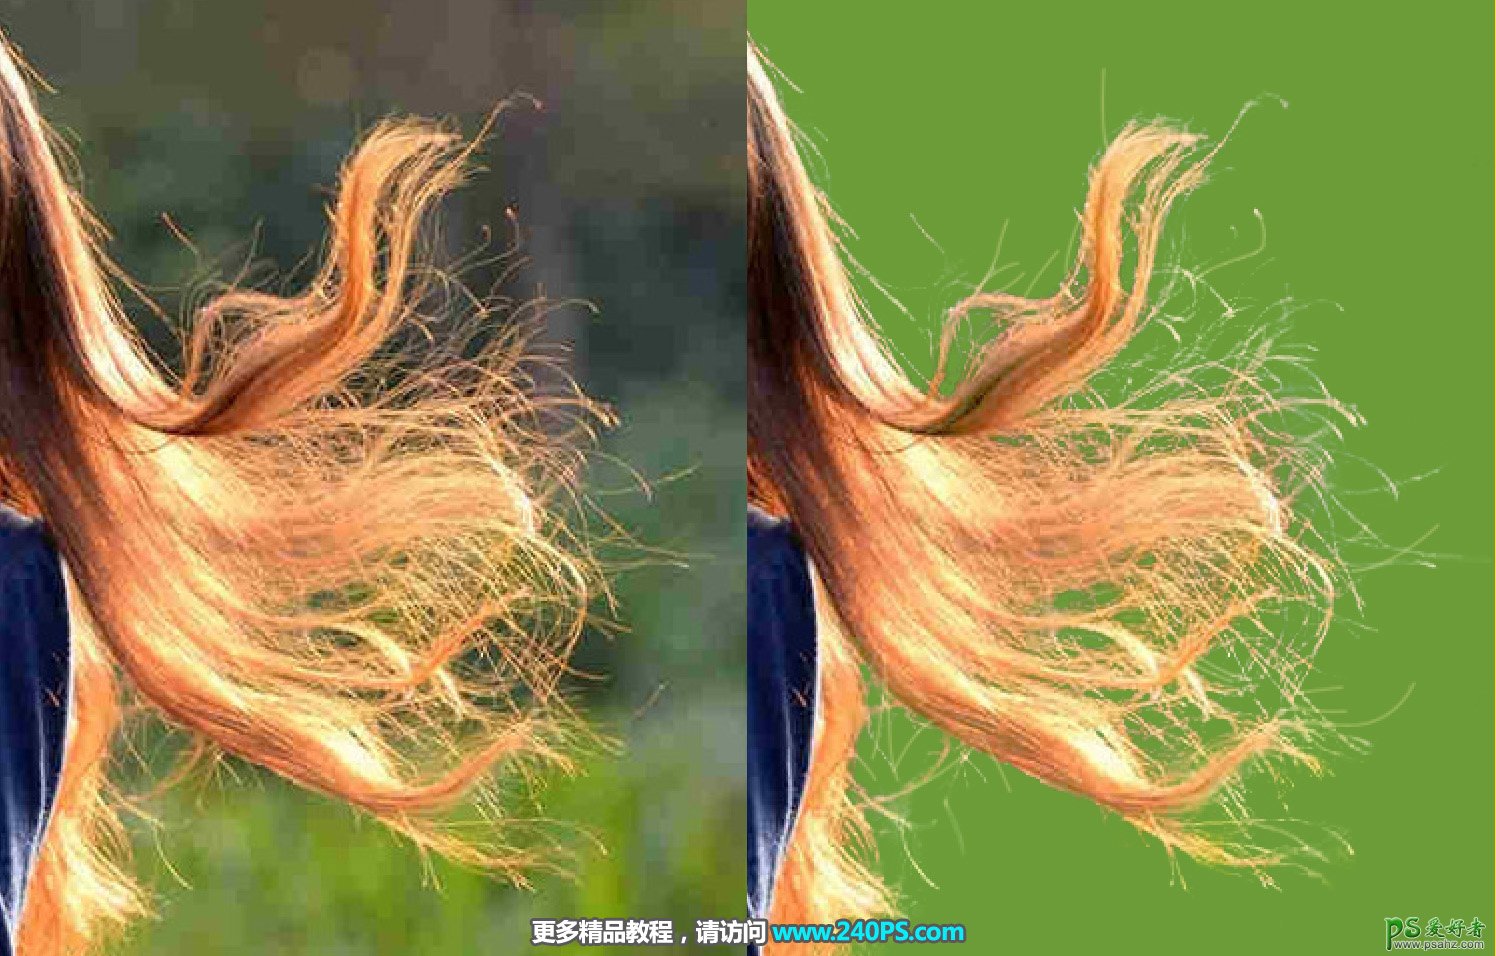 PS扣头发教程：学习给飞舞着长头发的美女照片完美扣图，扣细发丝